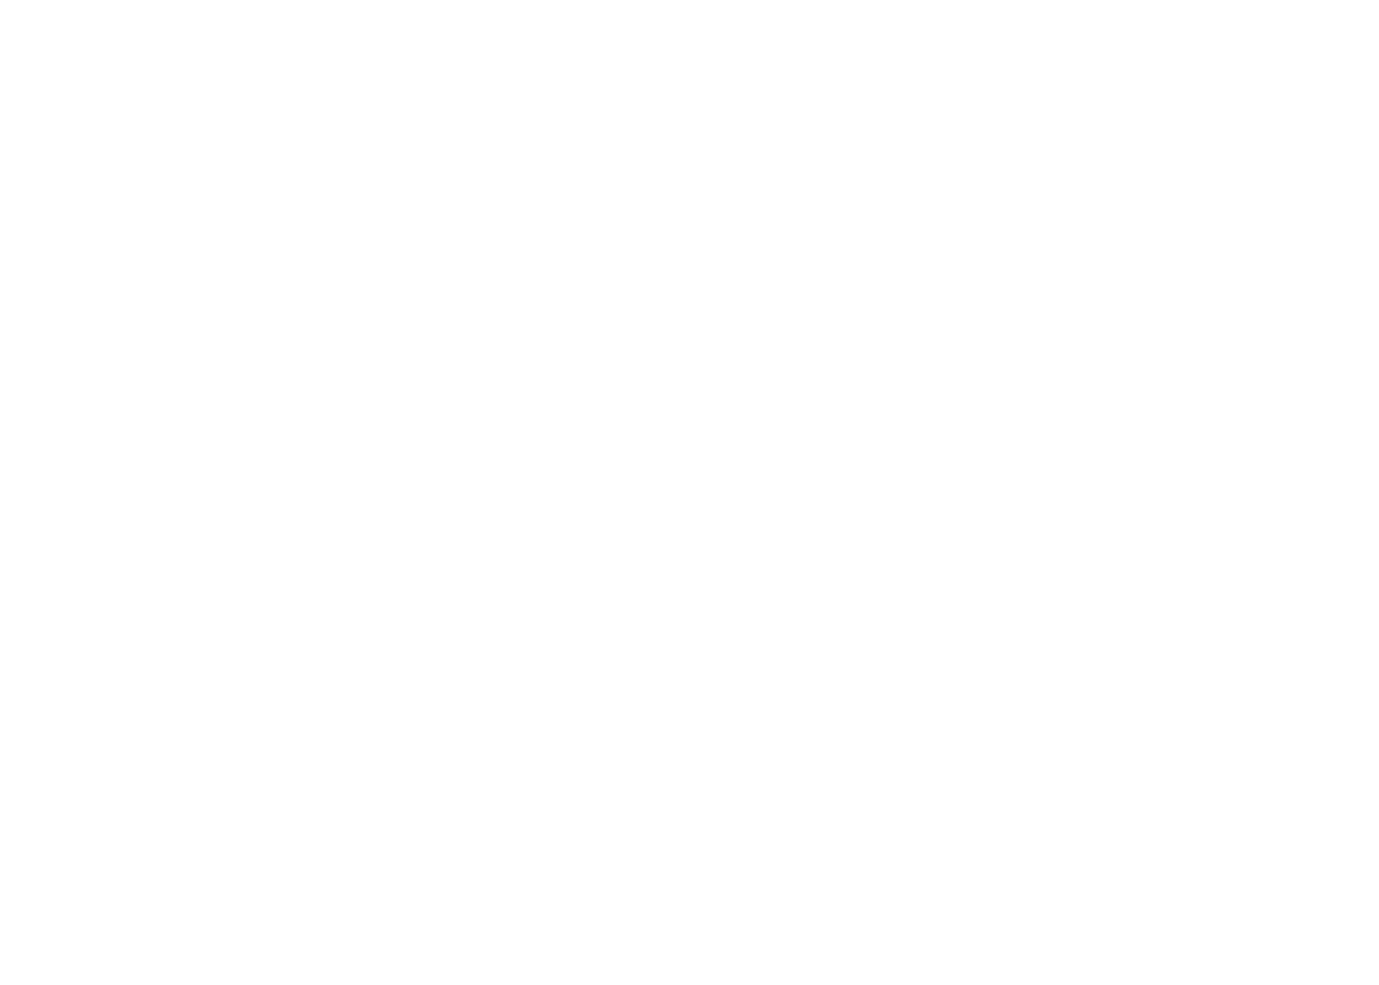 CityofTampa.logo_1.png